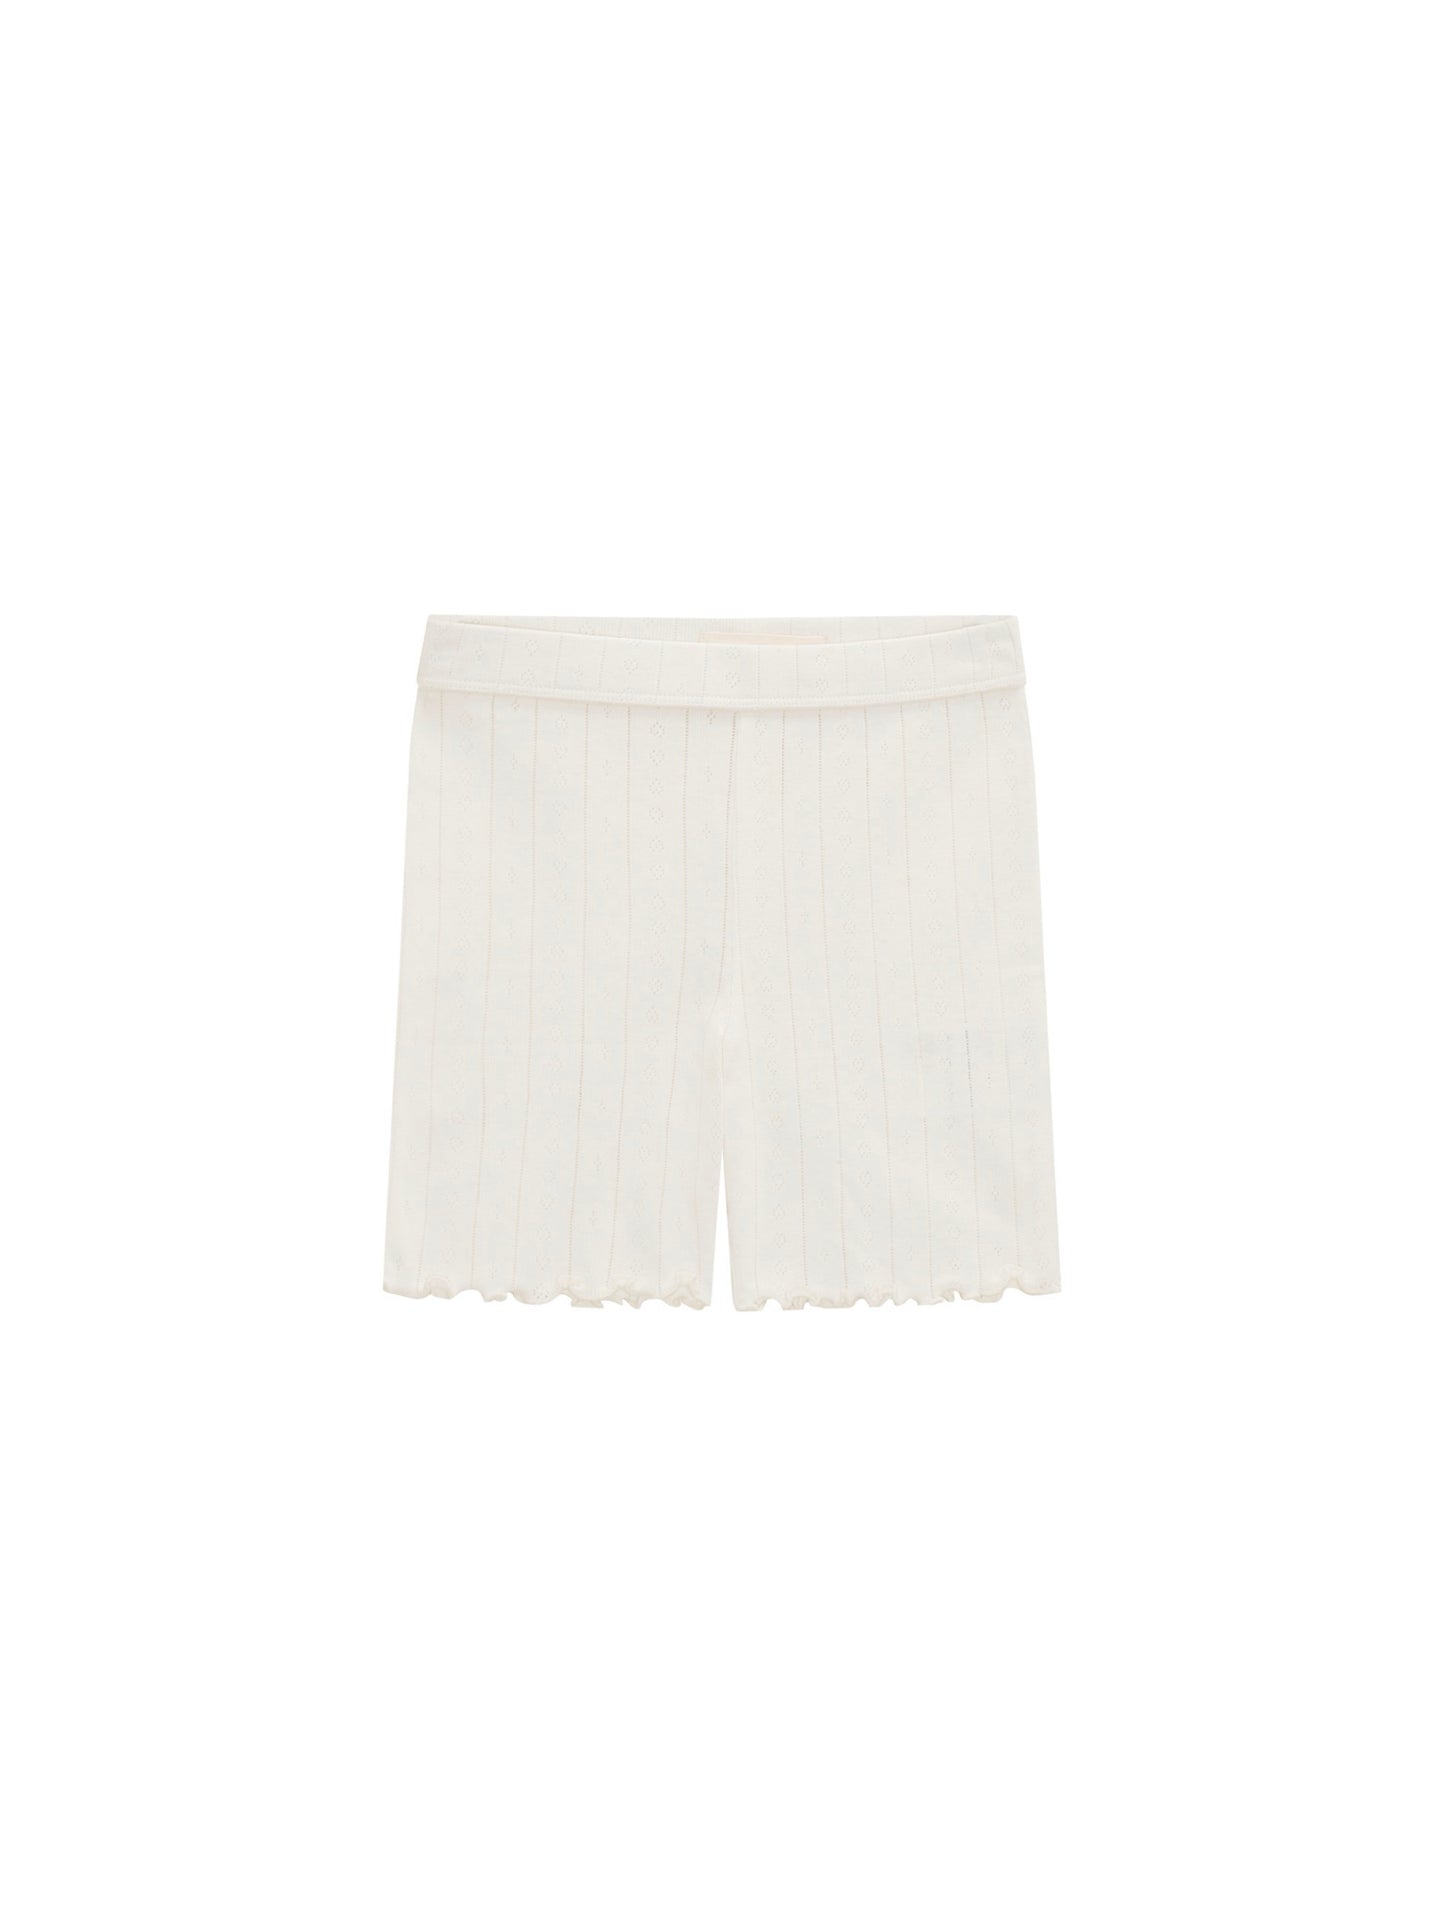 Skall Musling - Edie shorts Musling - Off-white